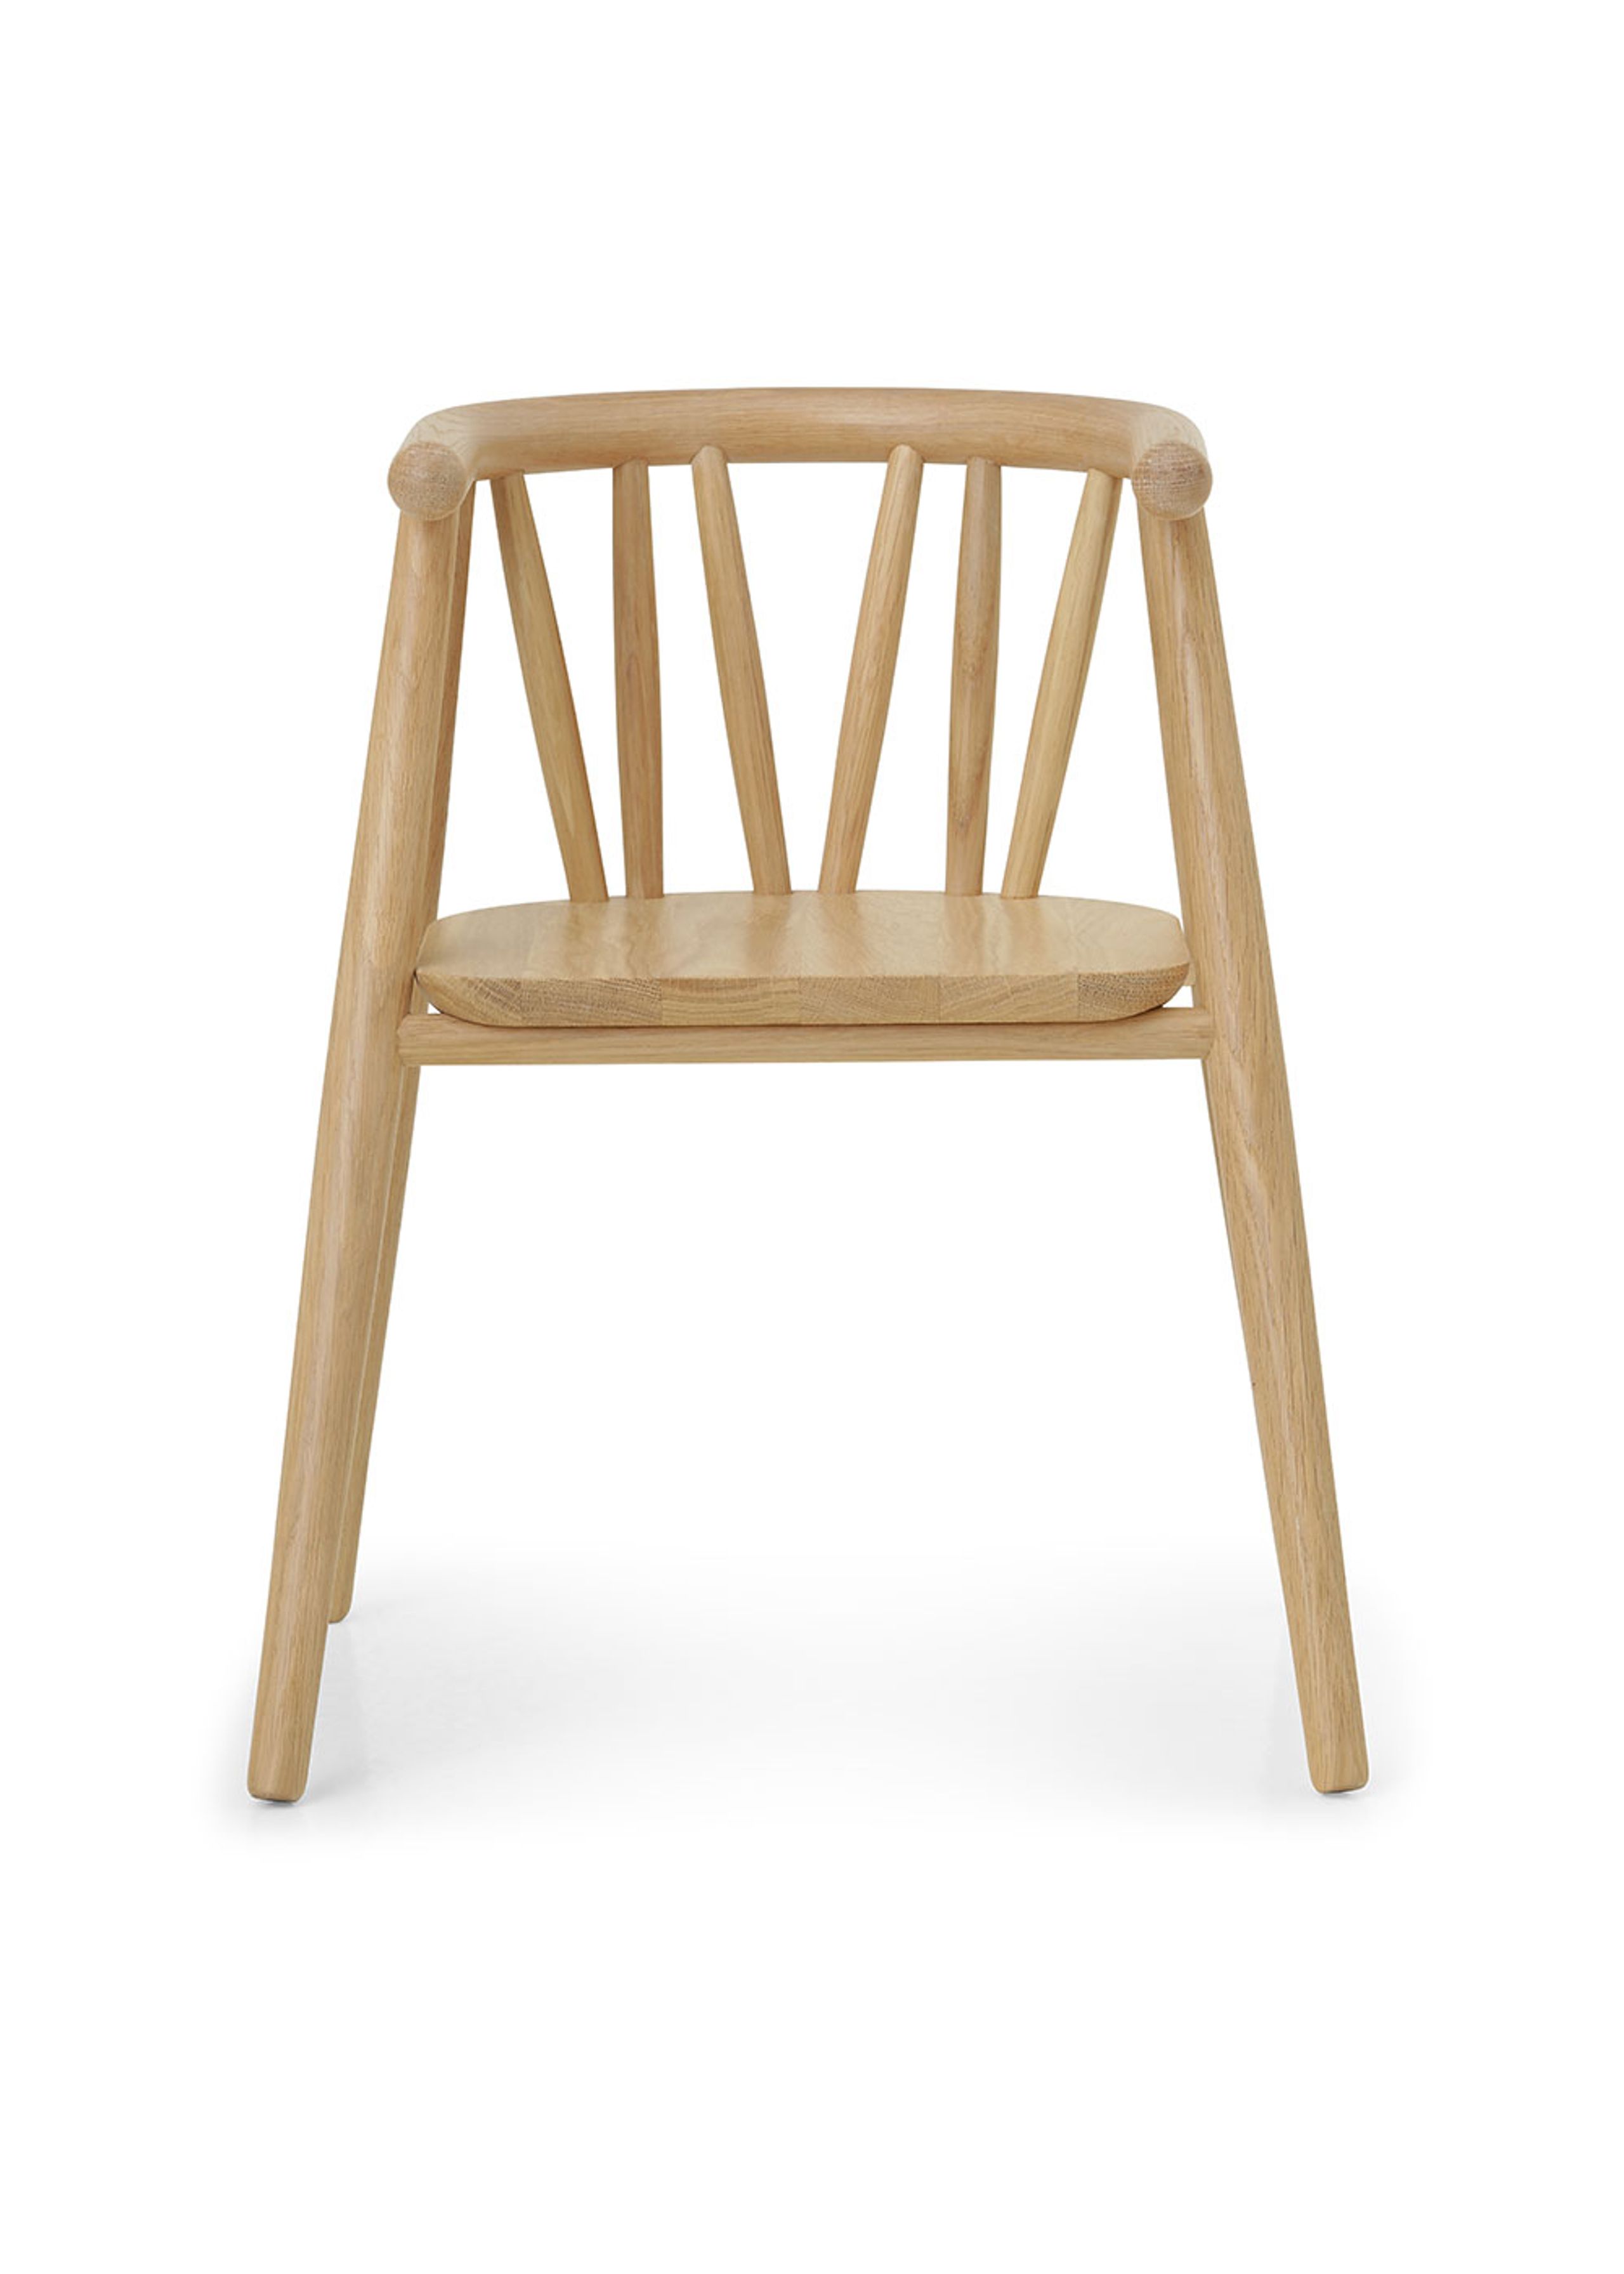 Oaklings - Kids chair - Storm Kid's Chair - Oak